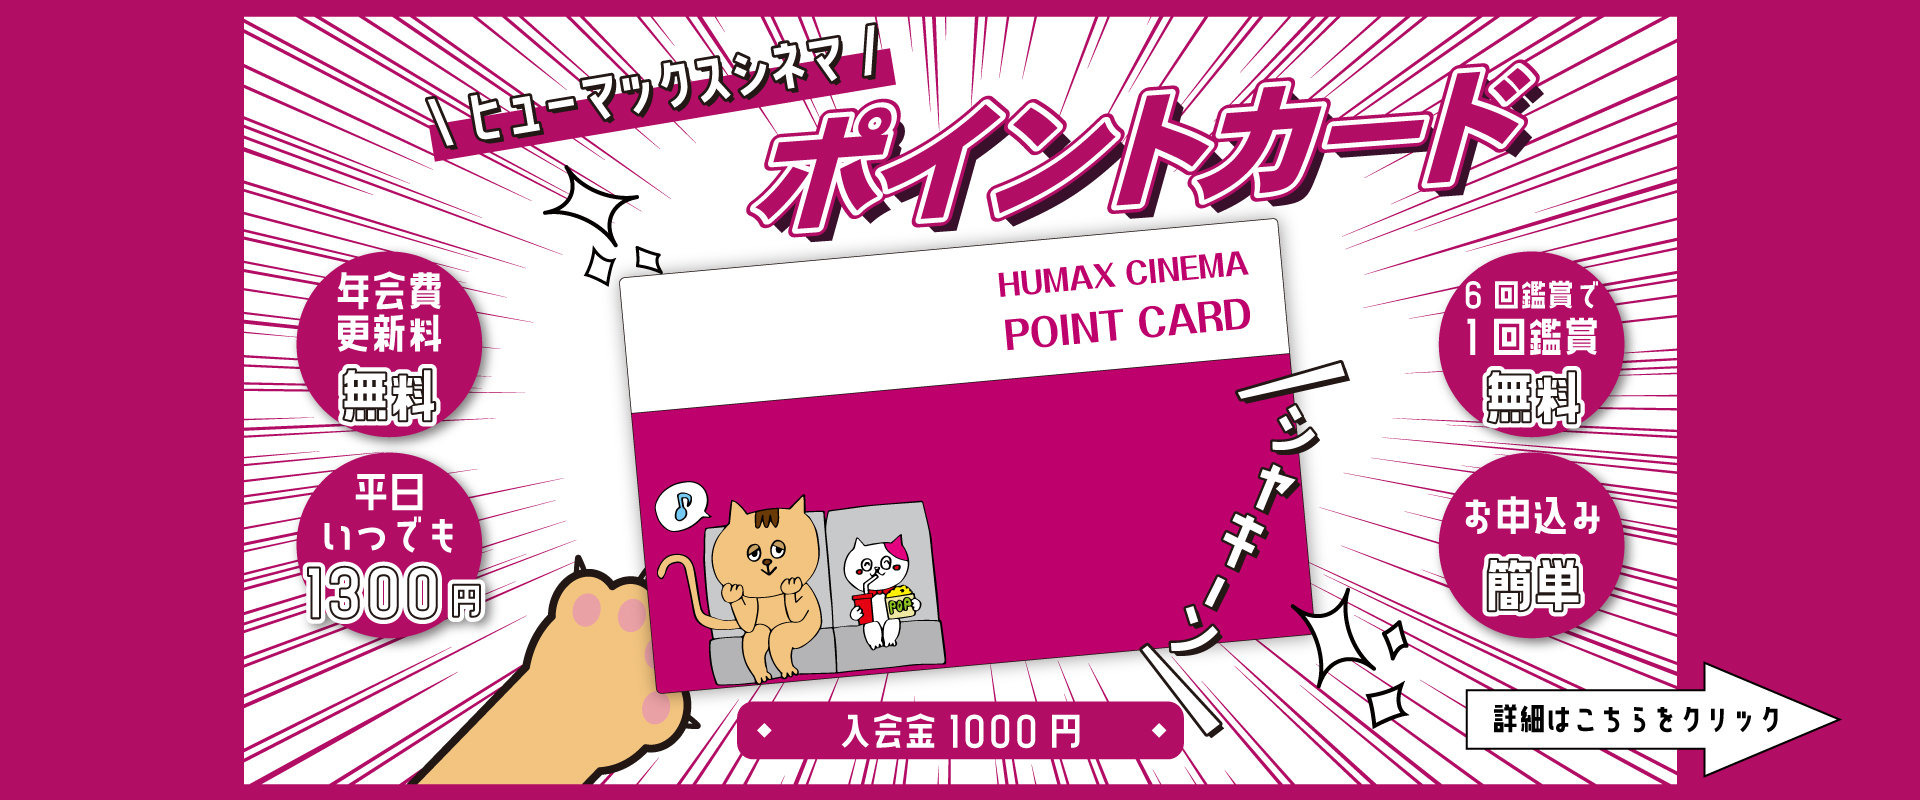 横須賀humaxシネマズ ヒューマックスシネマ humax cinema 映画館